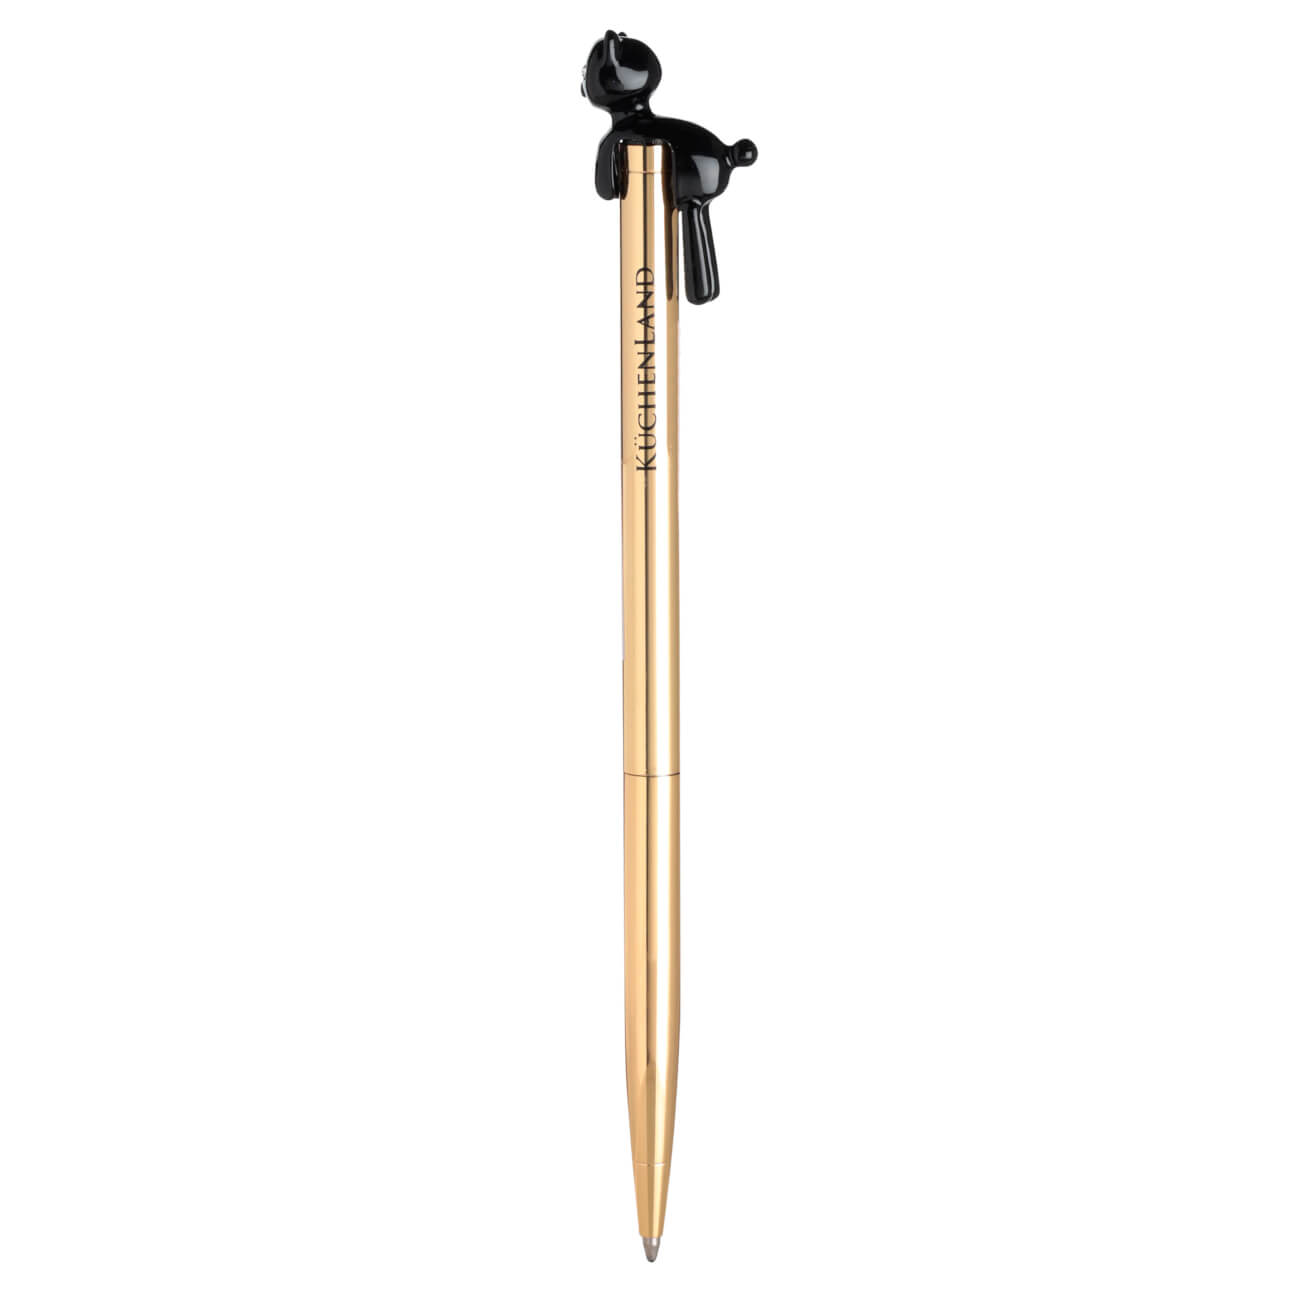 Ручка шариковая, 14 см, с фигуркой, металл, золотистая, Черный кот, Draw figure ручка doorlock